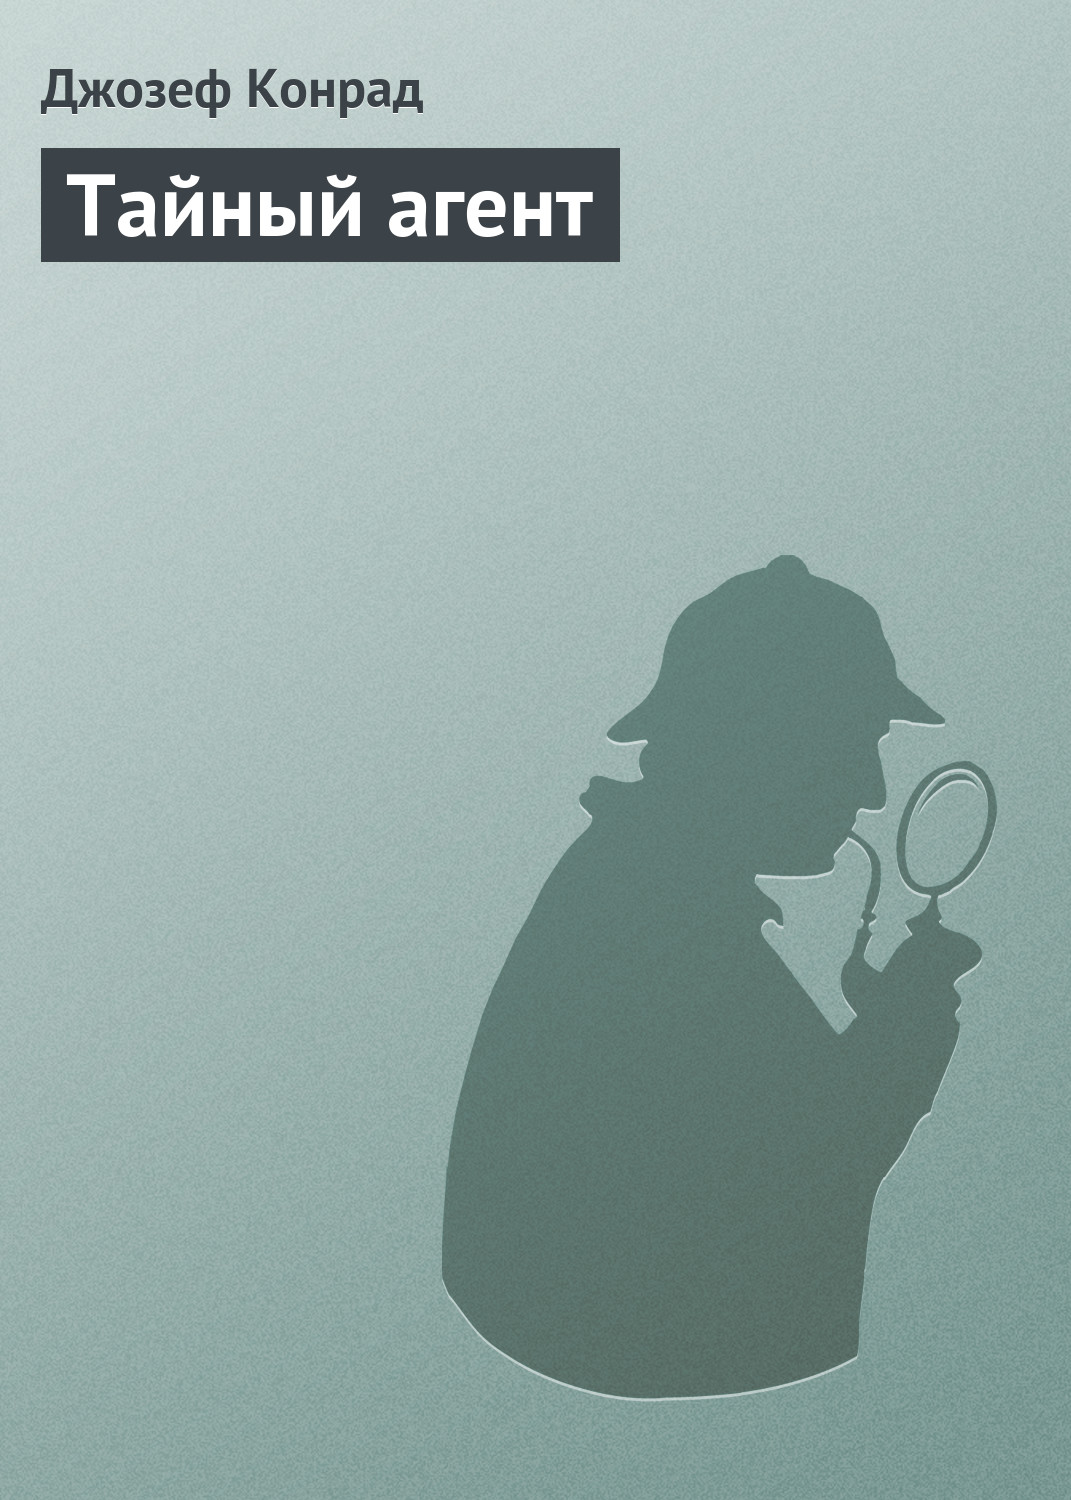 Книга Тайный агент из серии , созданная Джозеф Конрад, может относится к жанру Классические детективы, Литература 20 века, Зарубежные детективы. Стоимость электронной книги Тайный агент с идентификатором 22146625 составляет 5.99 руб.